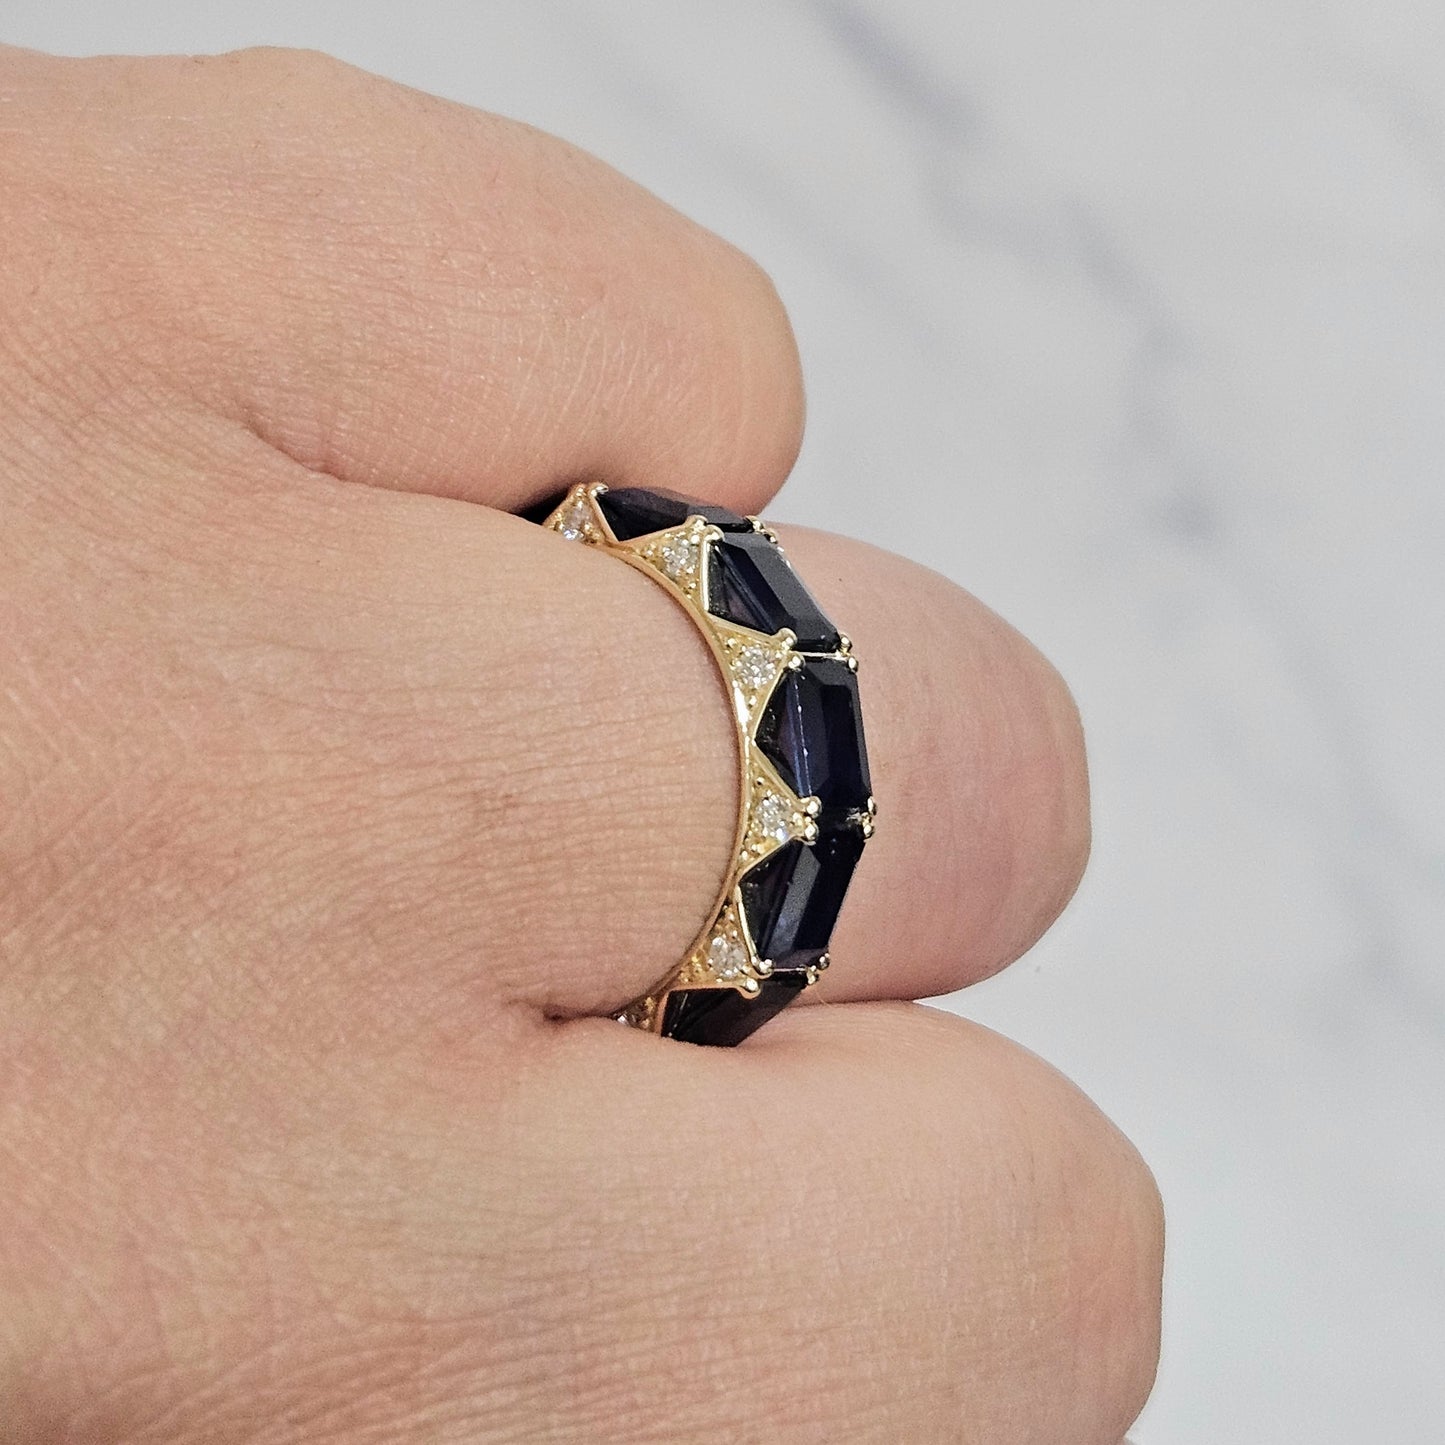 Emerald Cut Natural Blue Sapphire Full Eternity Ring/Natural blue sapphire Diamond Band/Emerald Cut blue sapphire Anniversary Ring